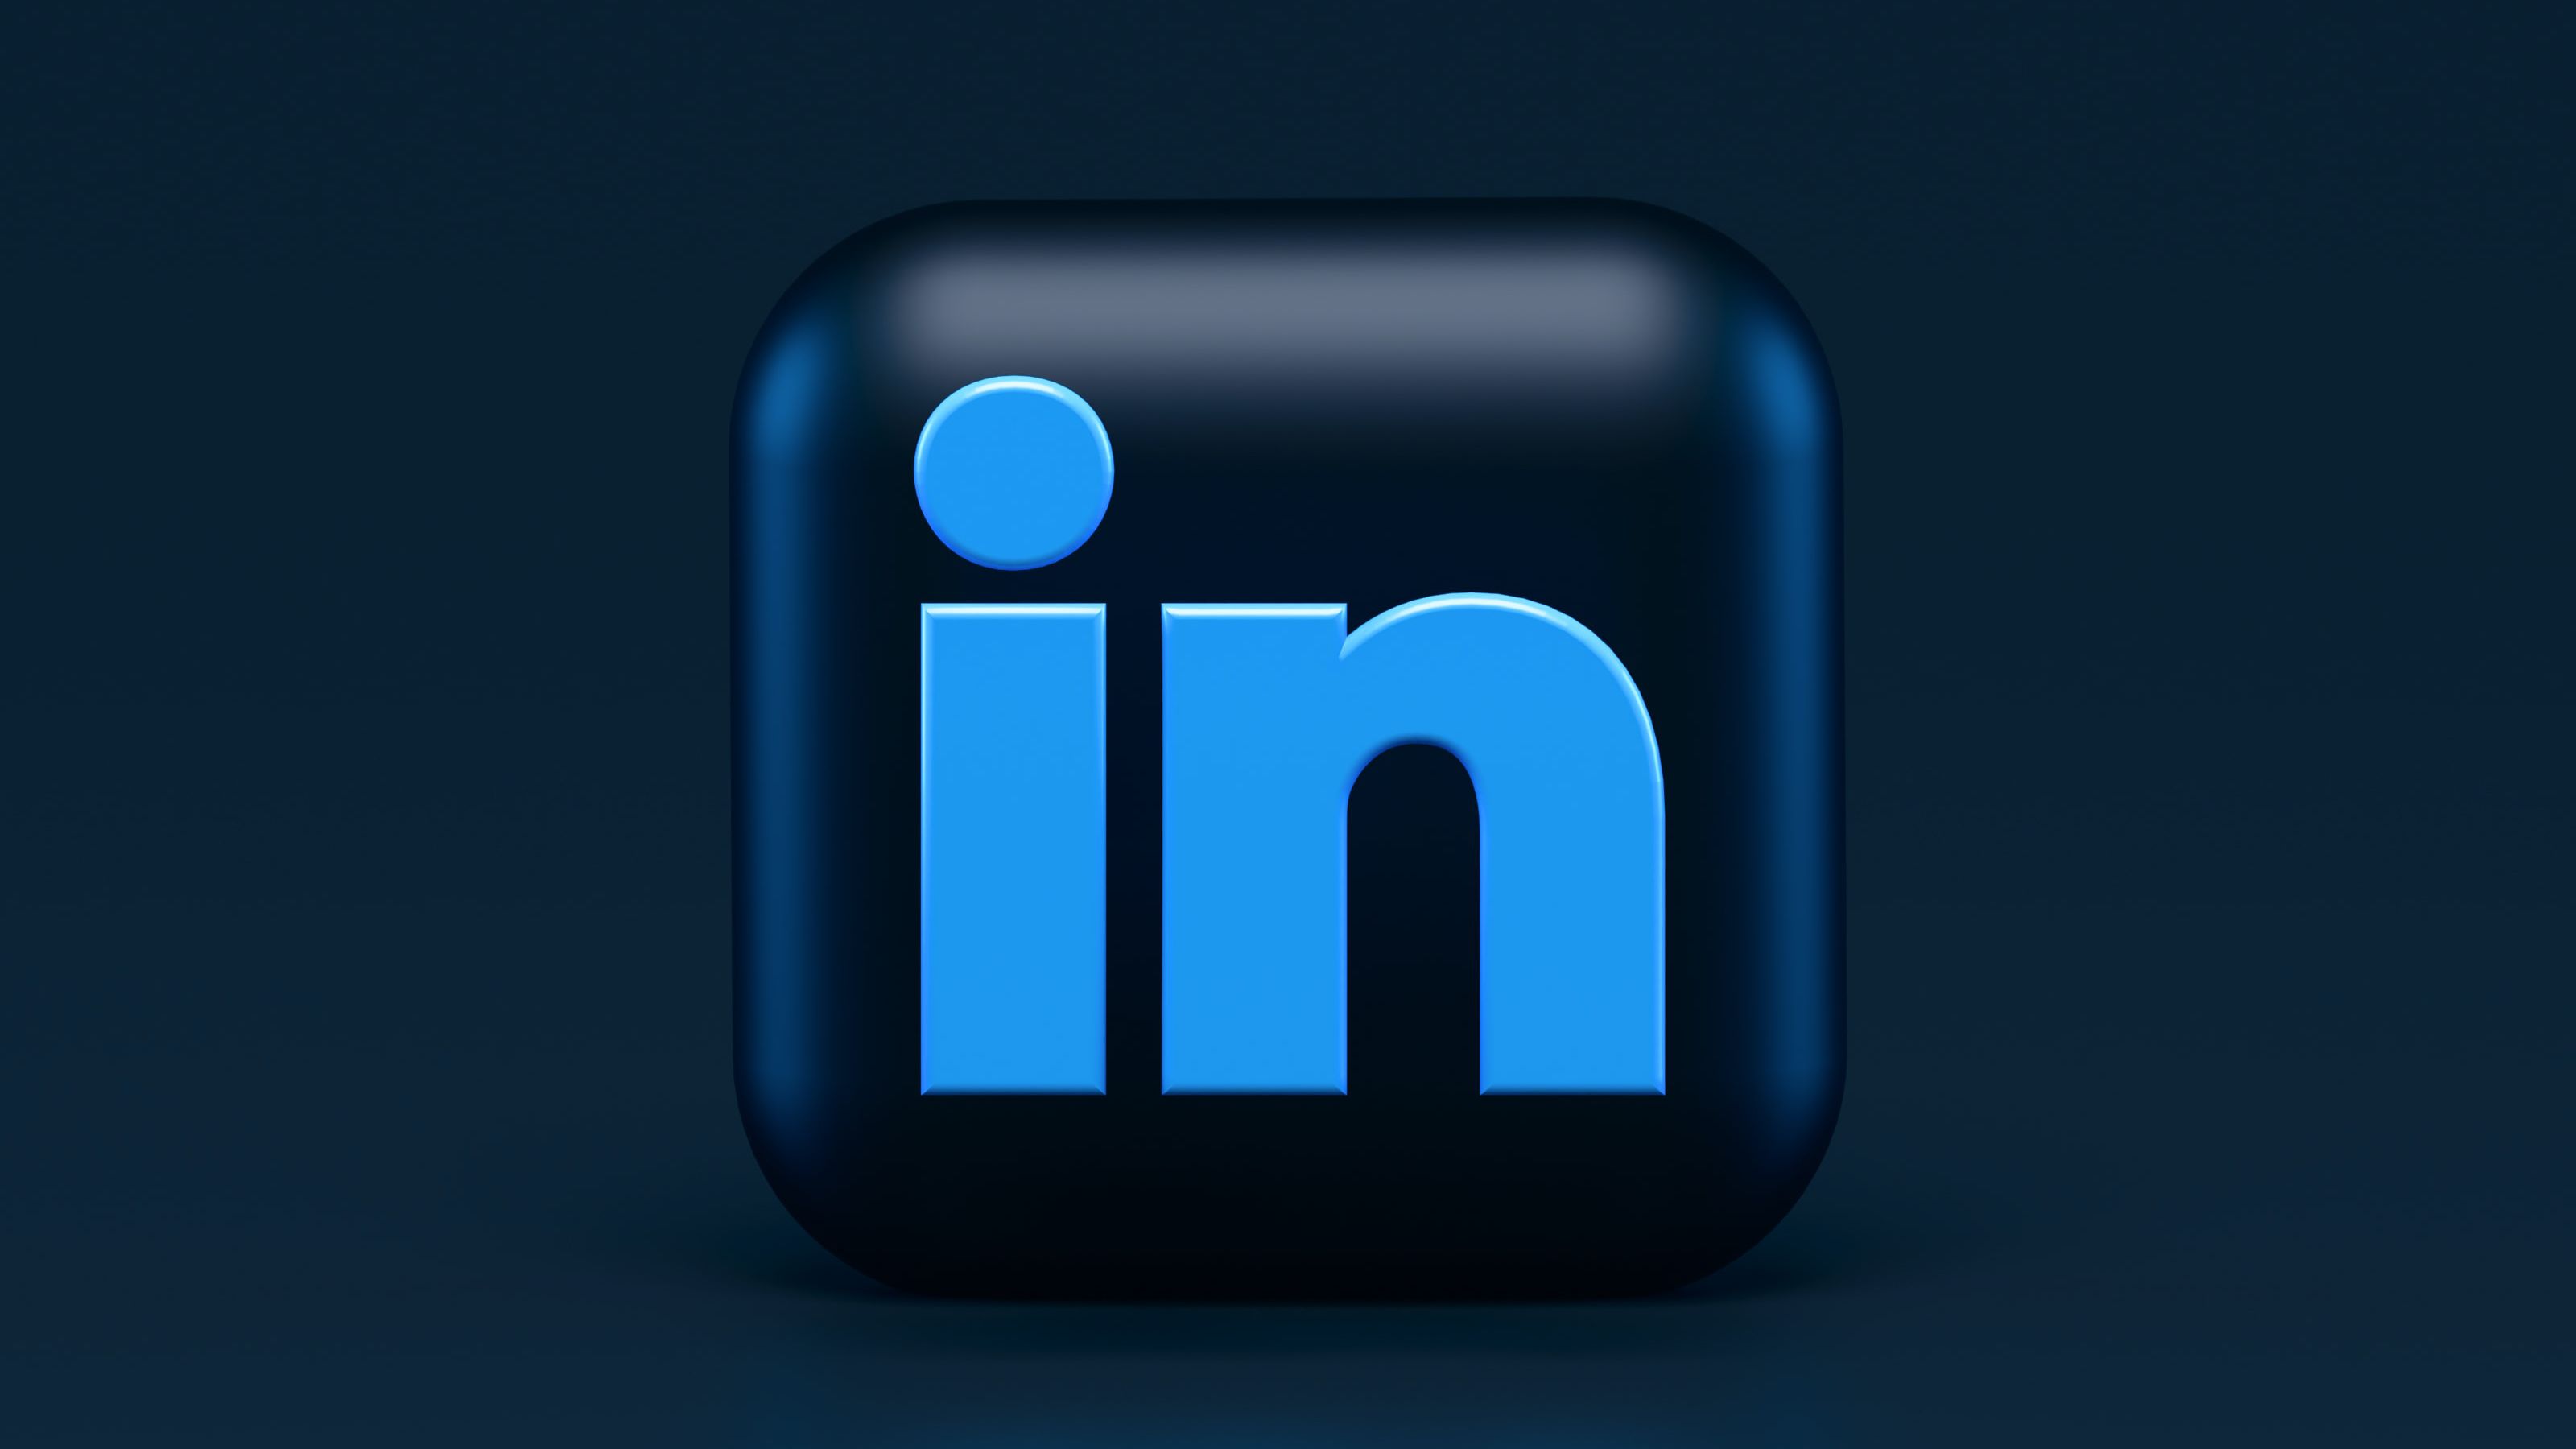 Como criar um perfil no LinkedIn e chamar a atenção das empresas?